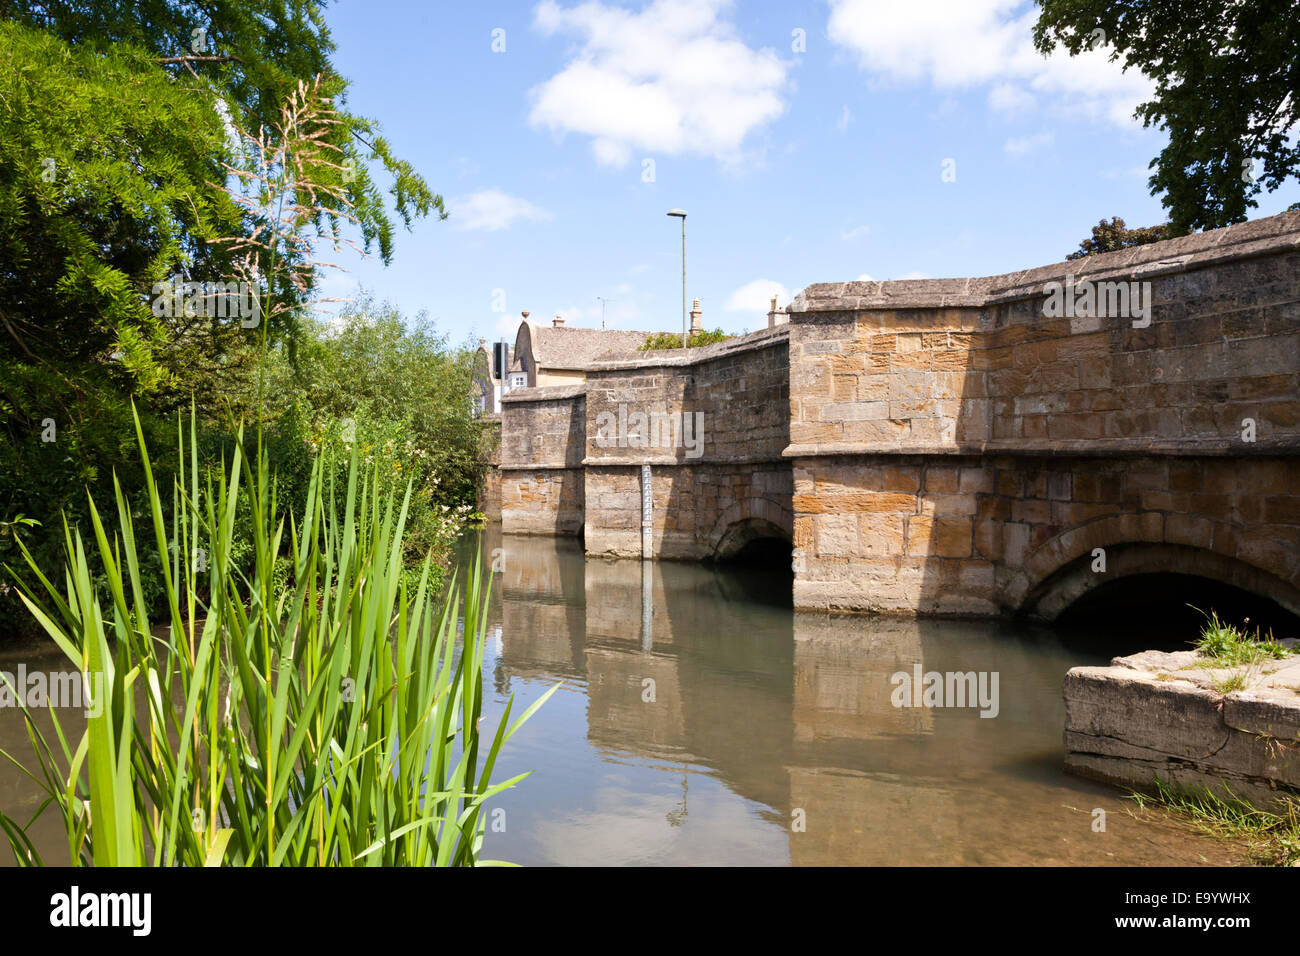 La rivière Windrush coule sous le vieux pont de pierre dans la ville de Cotswold Burford Oxfordshire, UK Banque D'Images